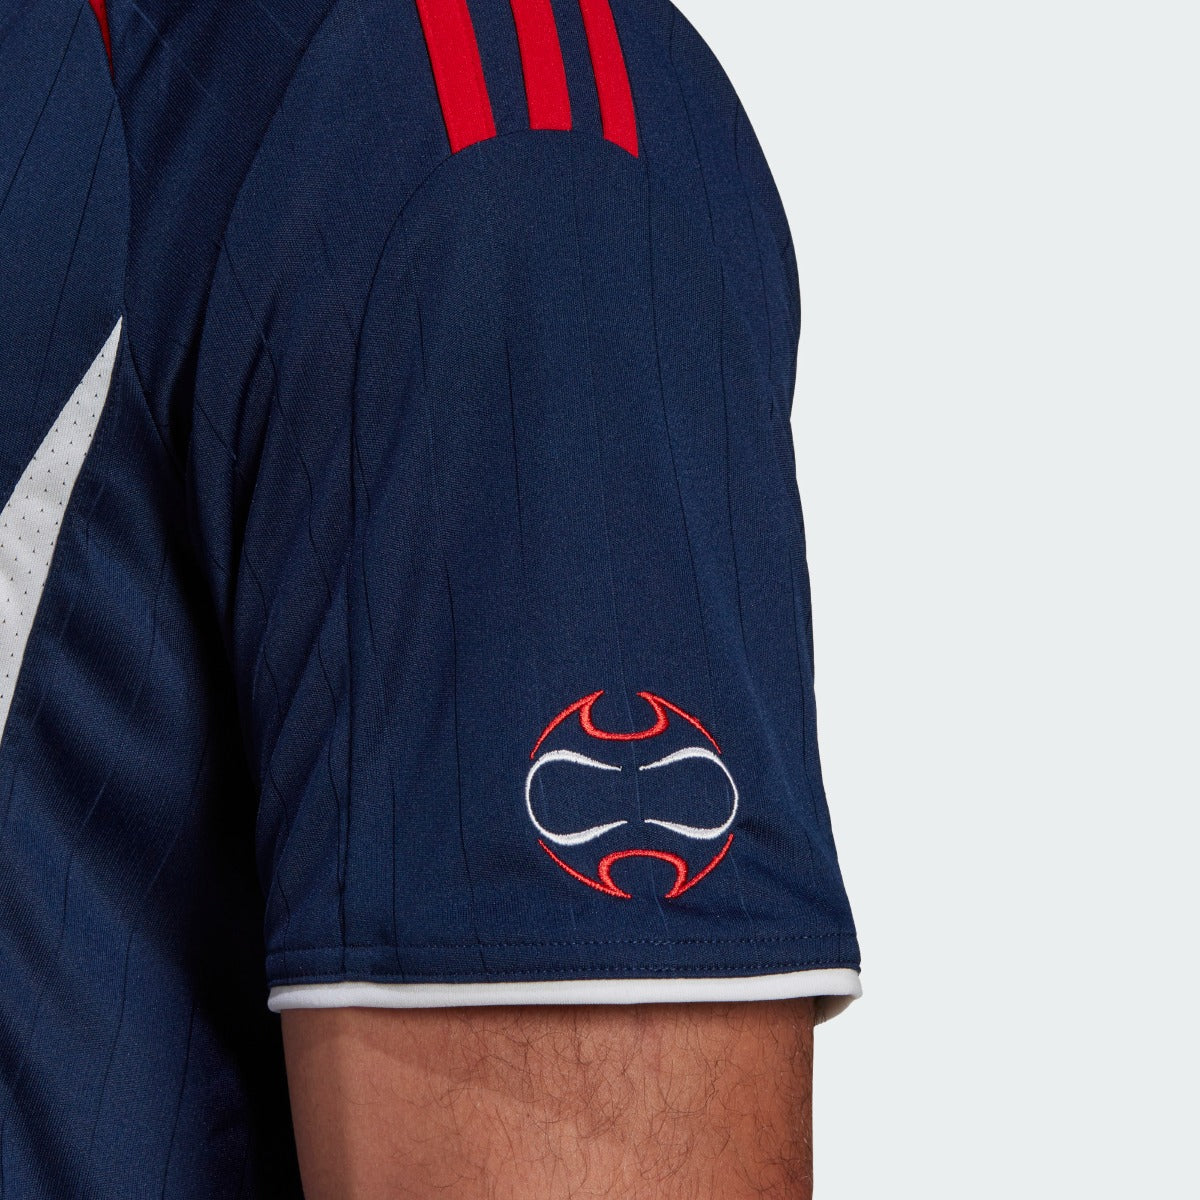 Adidas 2022 Bayern Munich Teamgeist Jersey - Night Indigo (Detail 3)